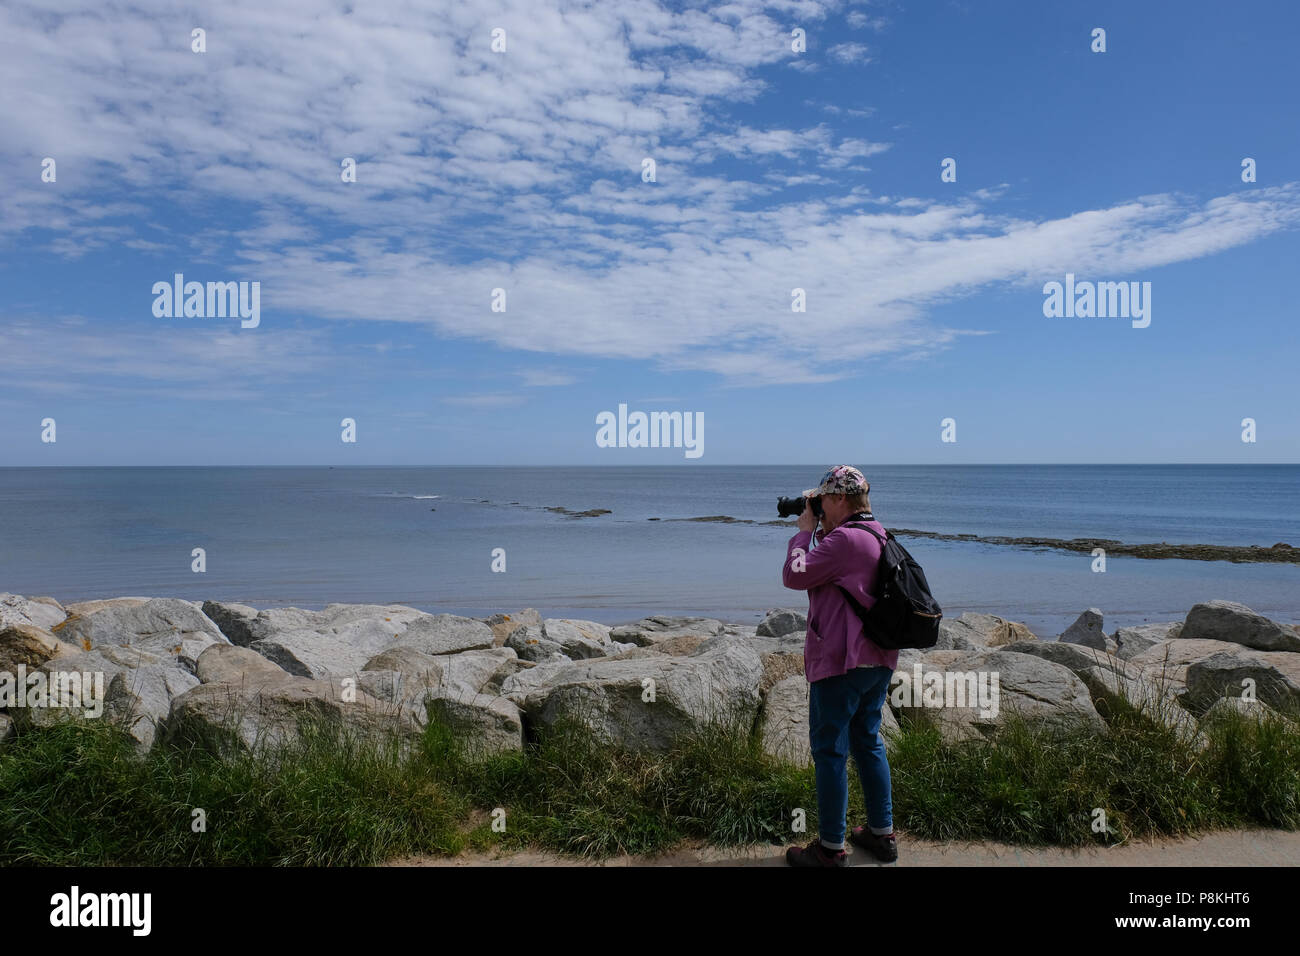 Des photos de photographe retraité dame en face de la paroi de la mer avec vue sur la mer et les rochers dans backgroundRobin,Hood's Bay Heritage Coast Yorkshire, Angleterre, Royaume-Uni Banque D'Images